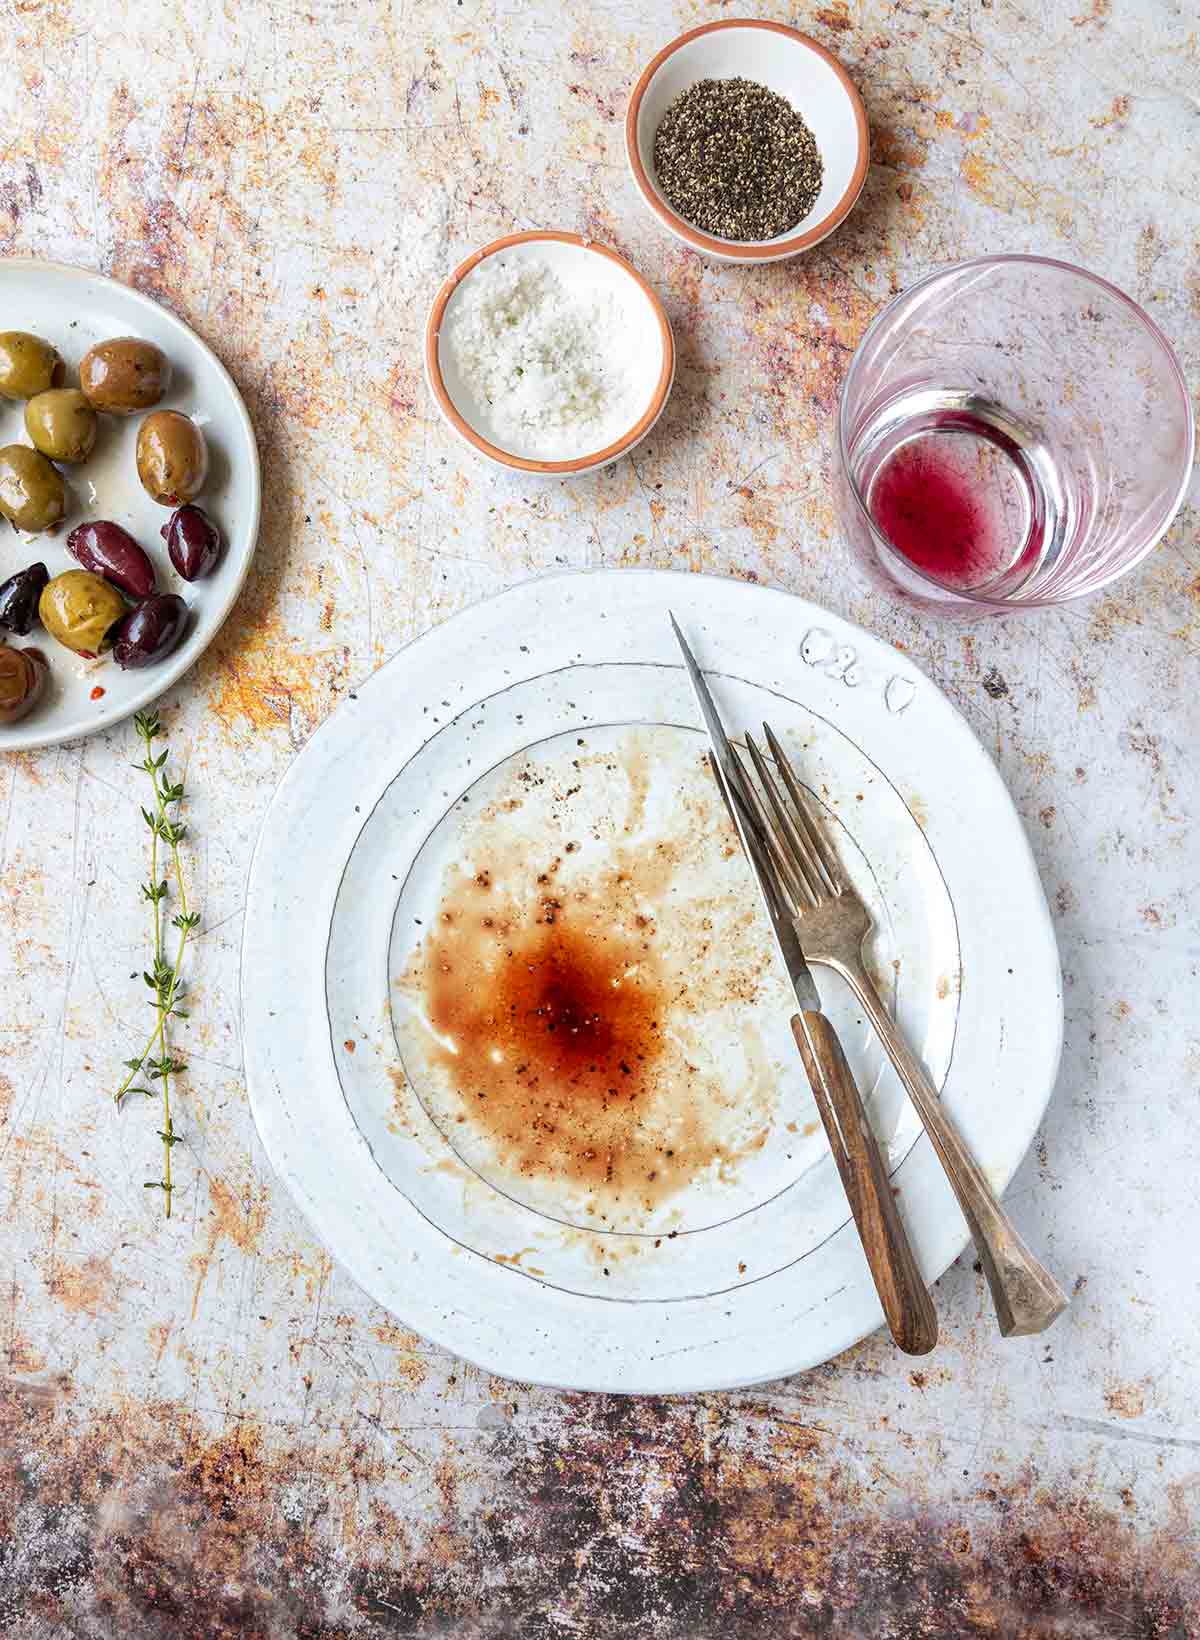 En vit tallrik med biffjuice och blod på, ett glas vin och oliver i närheten